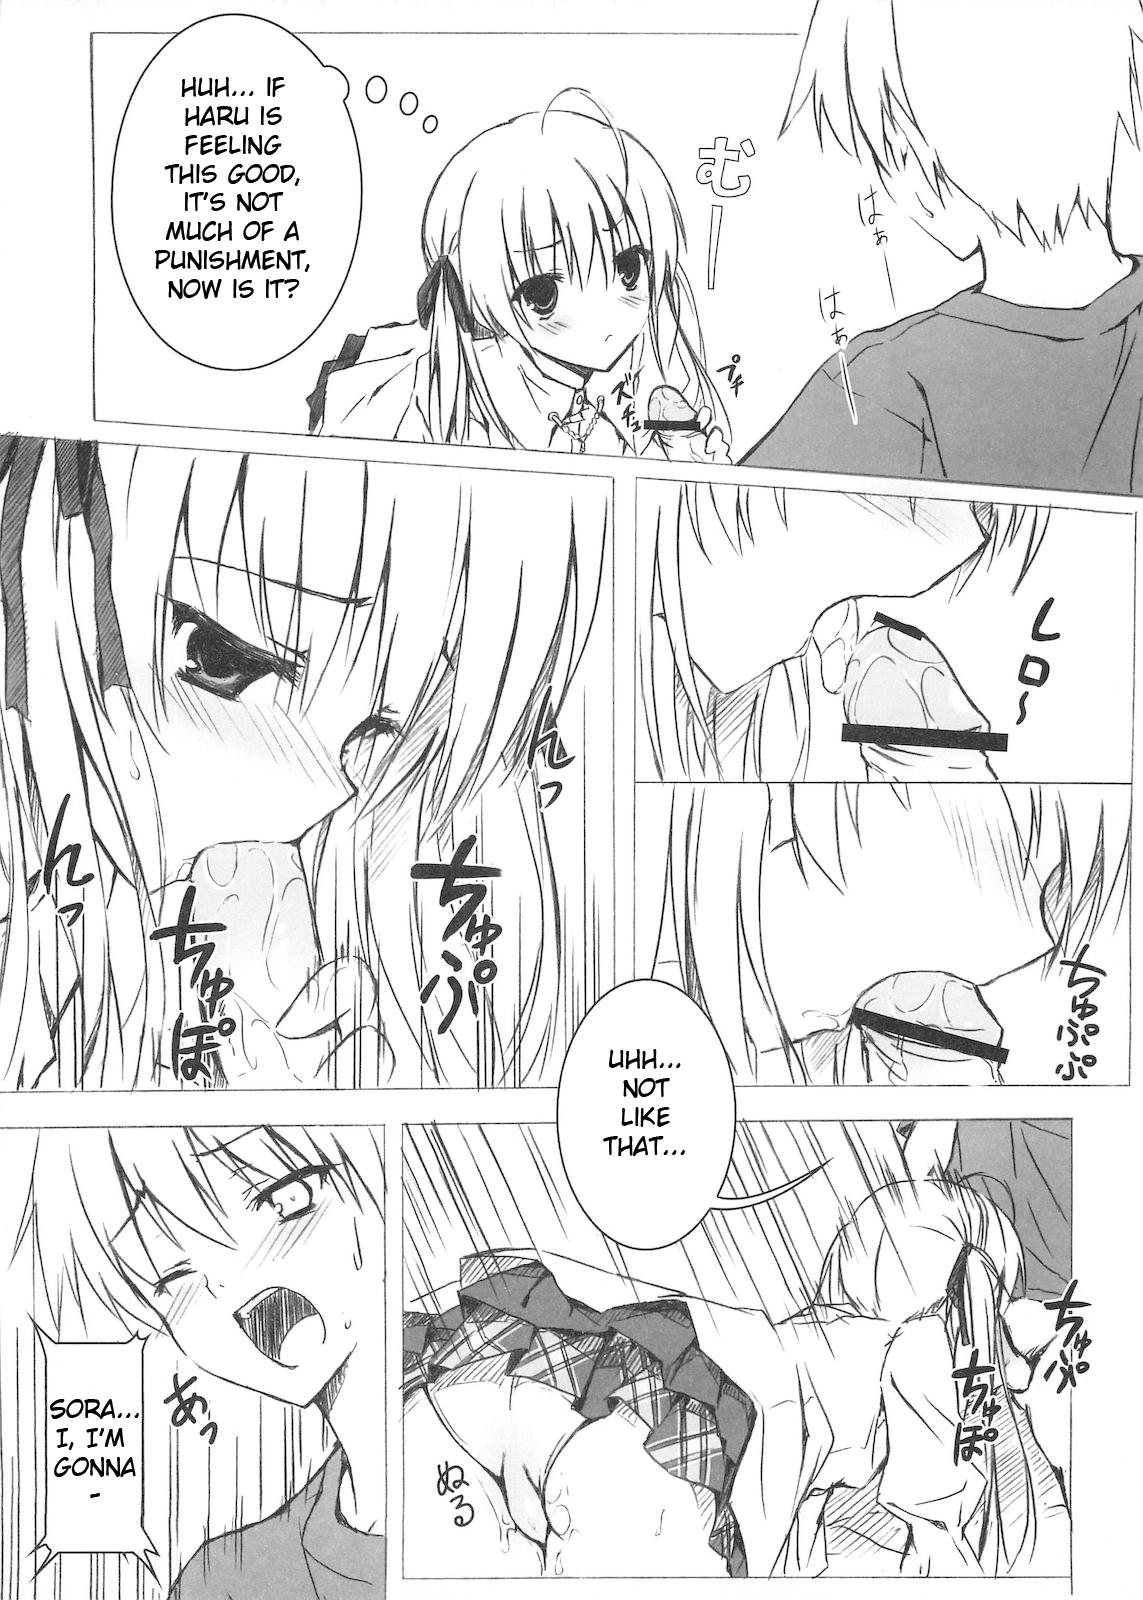 Threesome Sora no Omocha - Yosuga no sora Tits - Page 7